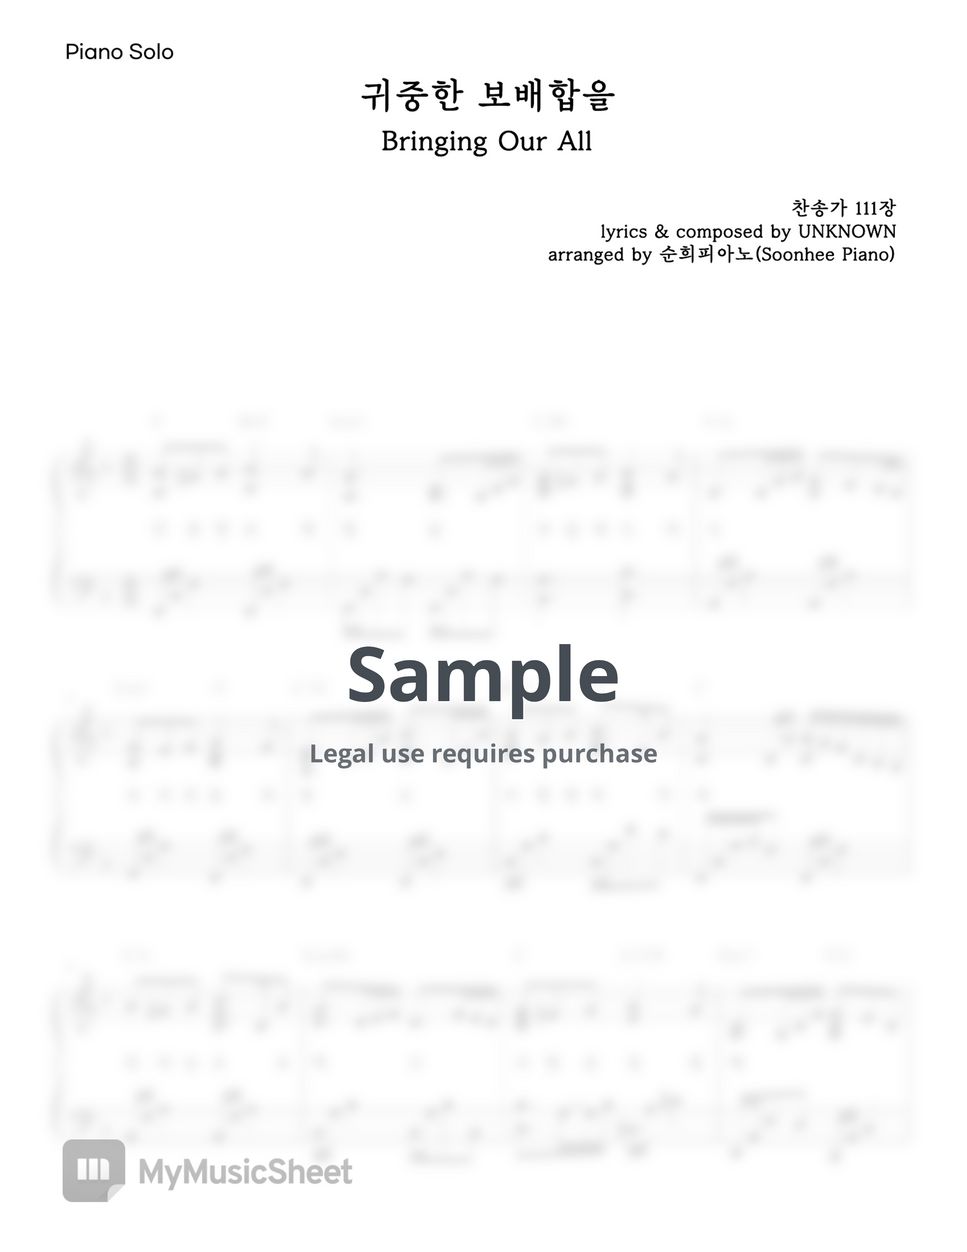 찬송가 - 감성적인 성탄 찬송가 연주 모음집 (50% 할인, 12곡) (코드, 가사 포함) by 순희피아노